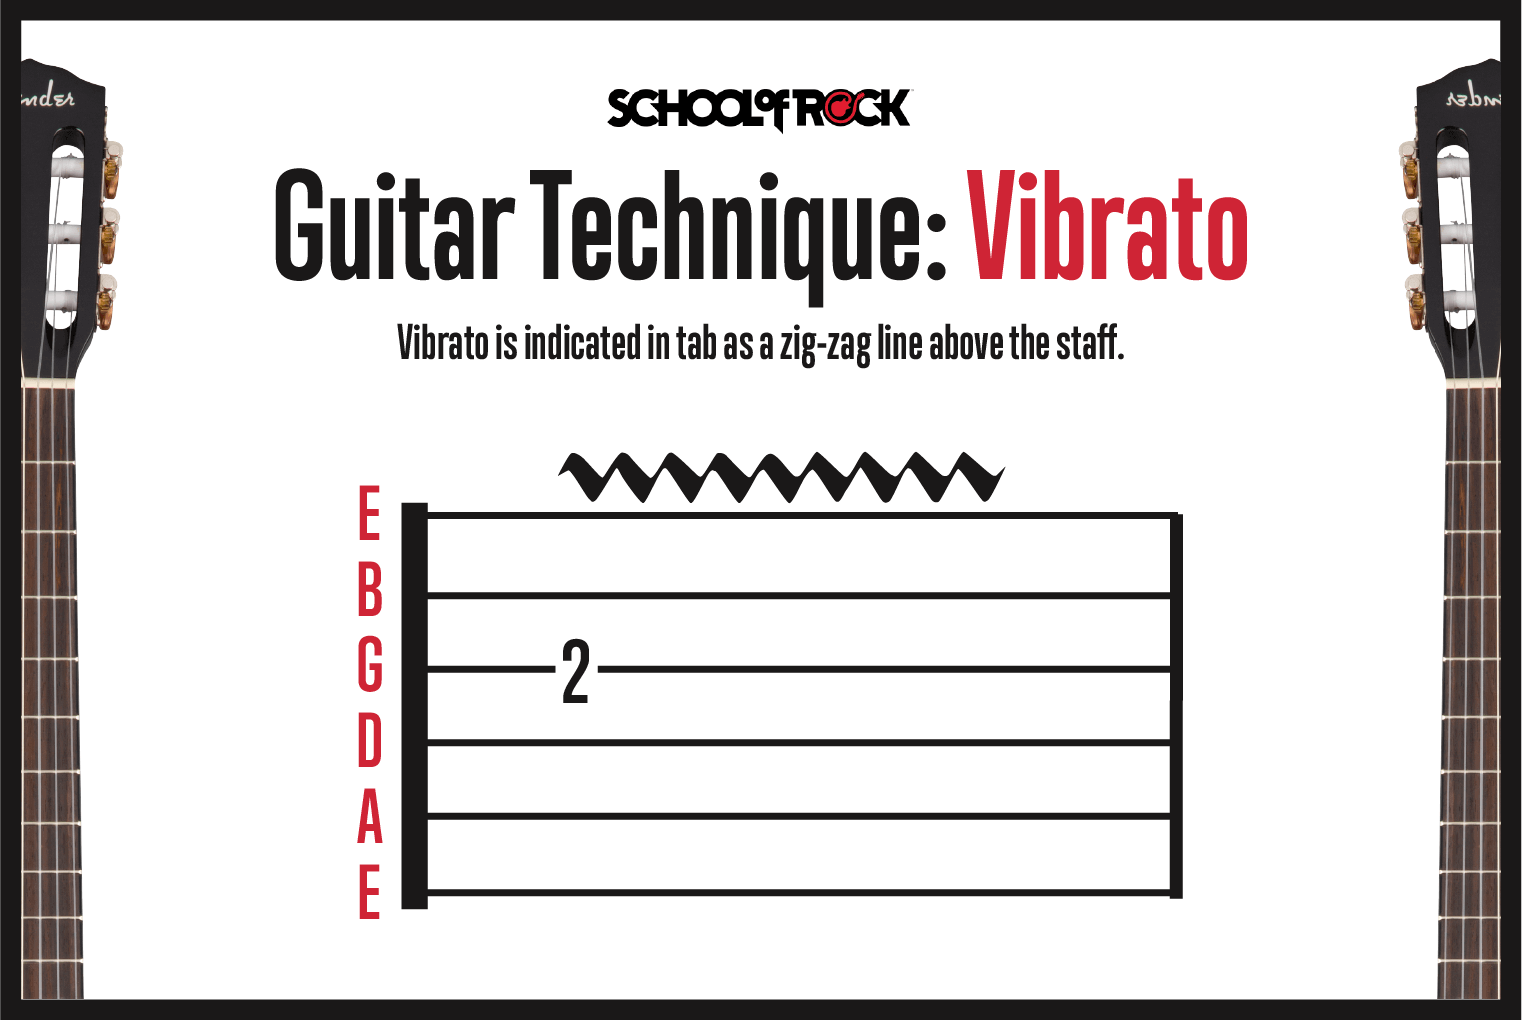 Guitar technique vibrato